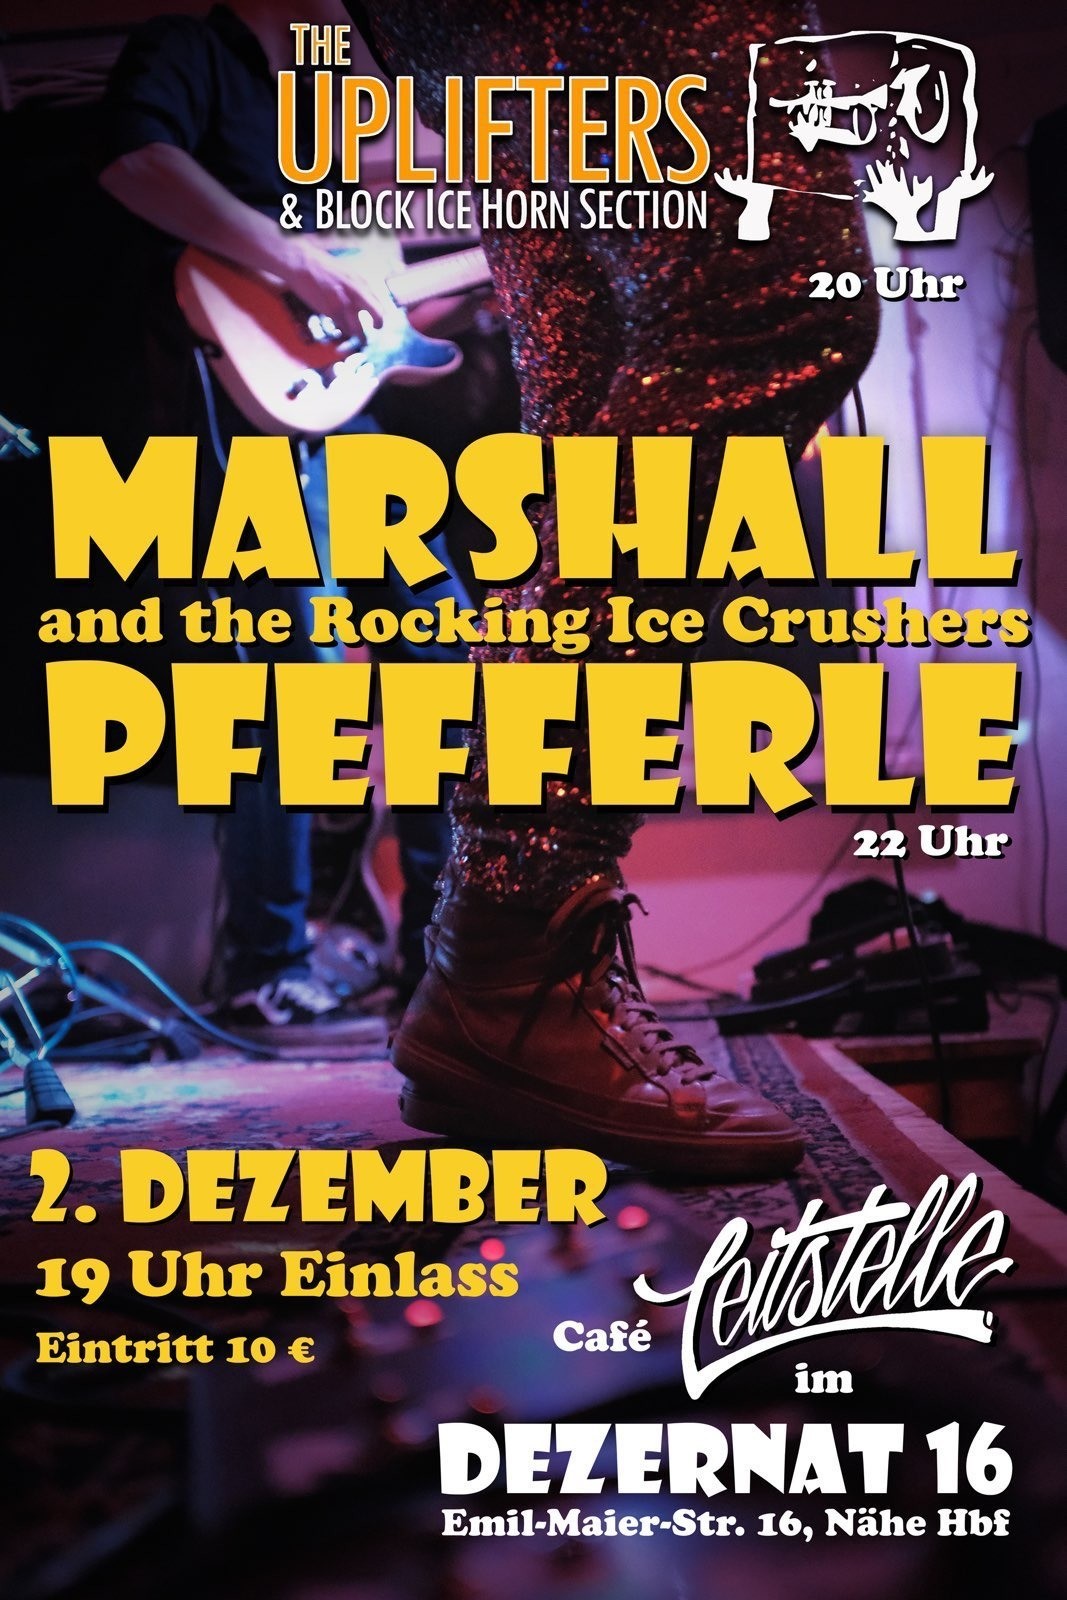 Plakat für ein Konzert am 2. Dezember im Café Leitstelle in Heidelberg.

19 Uhr: Einlaass
20 Uhr: The Uplifters & Block Ice Horn Section
22 Uhr: Marshall Pfefferle and the Rocking Ice Crushers

Eintritt 10€